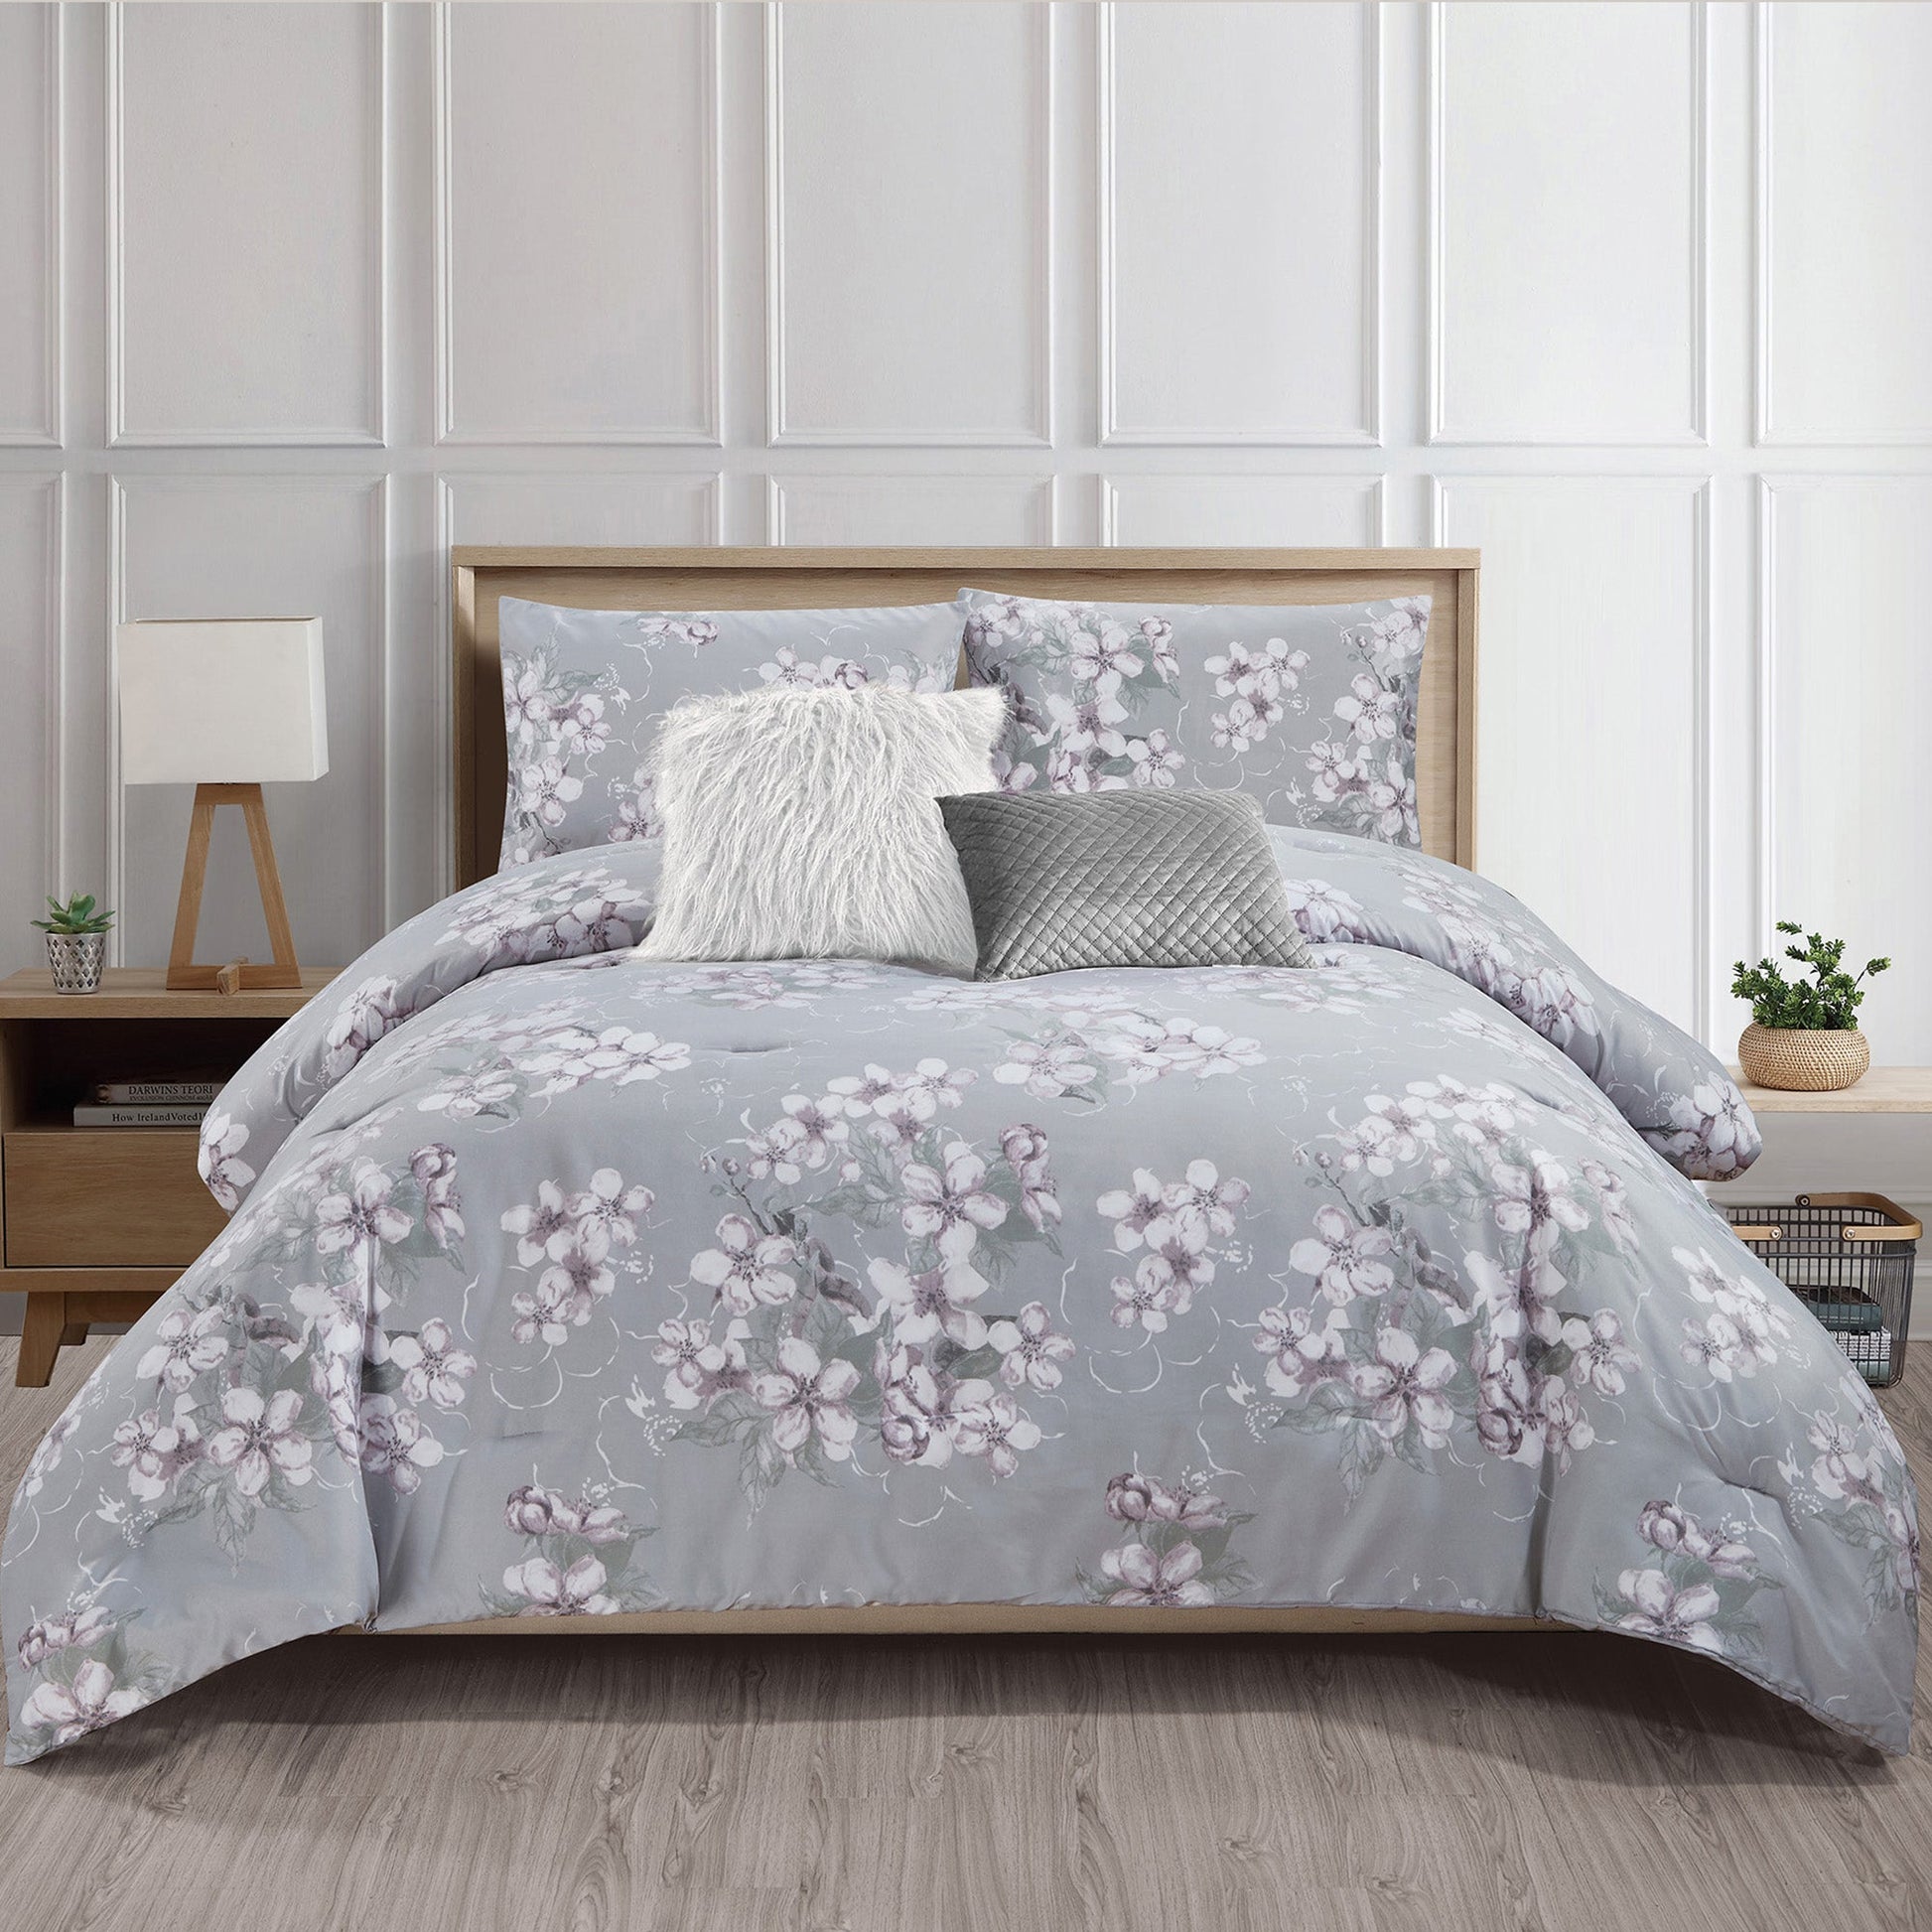 Wov Printed Microfiber Comforter Bedding Set 5 Piece Double/Queen Alysse - DecoElegance - Bedding Comforter Set